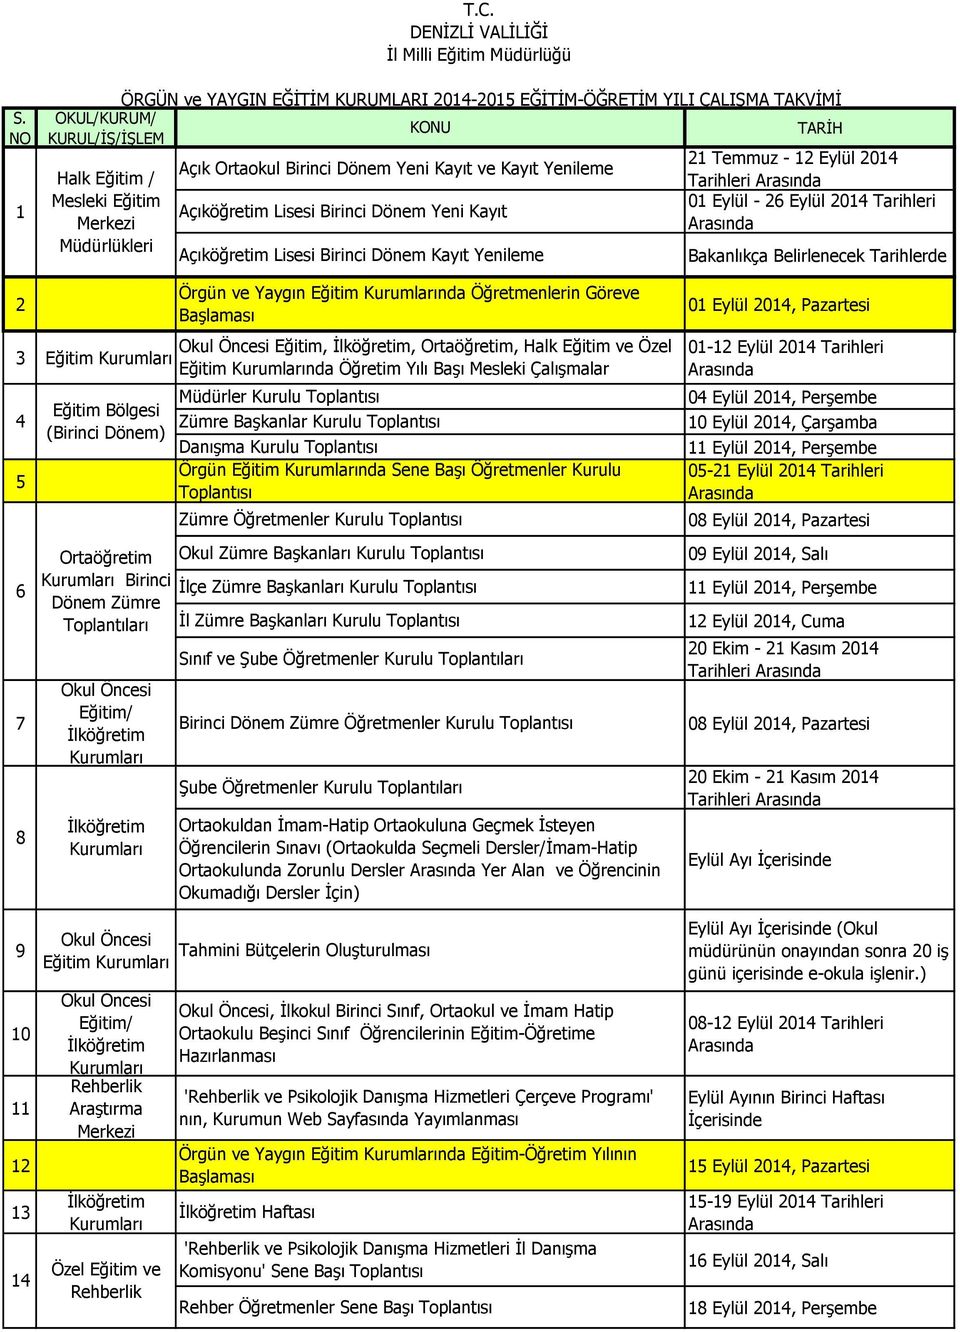 Lisesi Birinci Dönem Yeni Kayıt Açıköğretim Lisesi Birinci Dönem Kayıt Yenileme TARİH 21 Temmuz - 12 Eylül 2014 Tarihleri 01 Eylül - 26 Eylül 2014 Tarihleri Örgün ve Yaygın Eğitim nda Öğretmenlerin